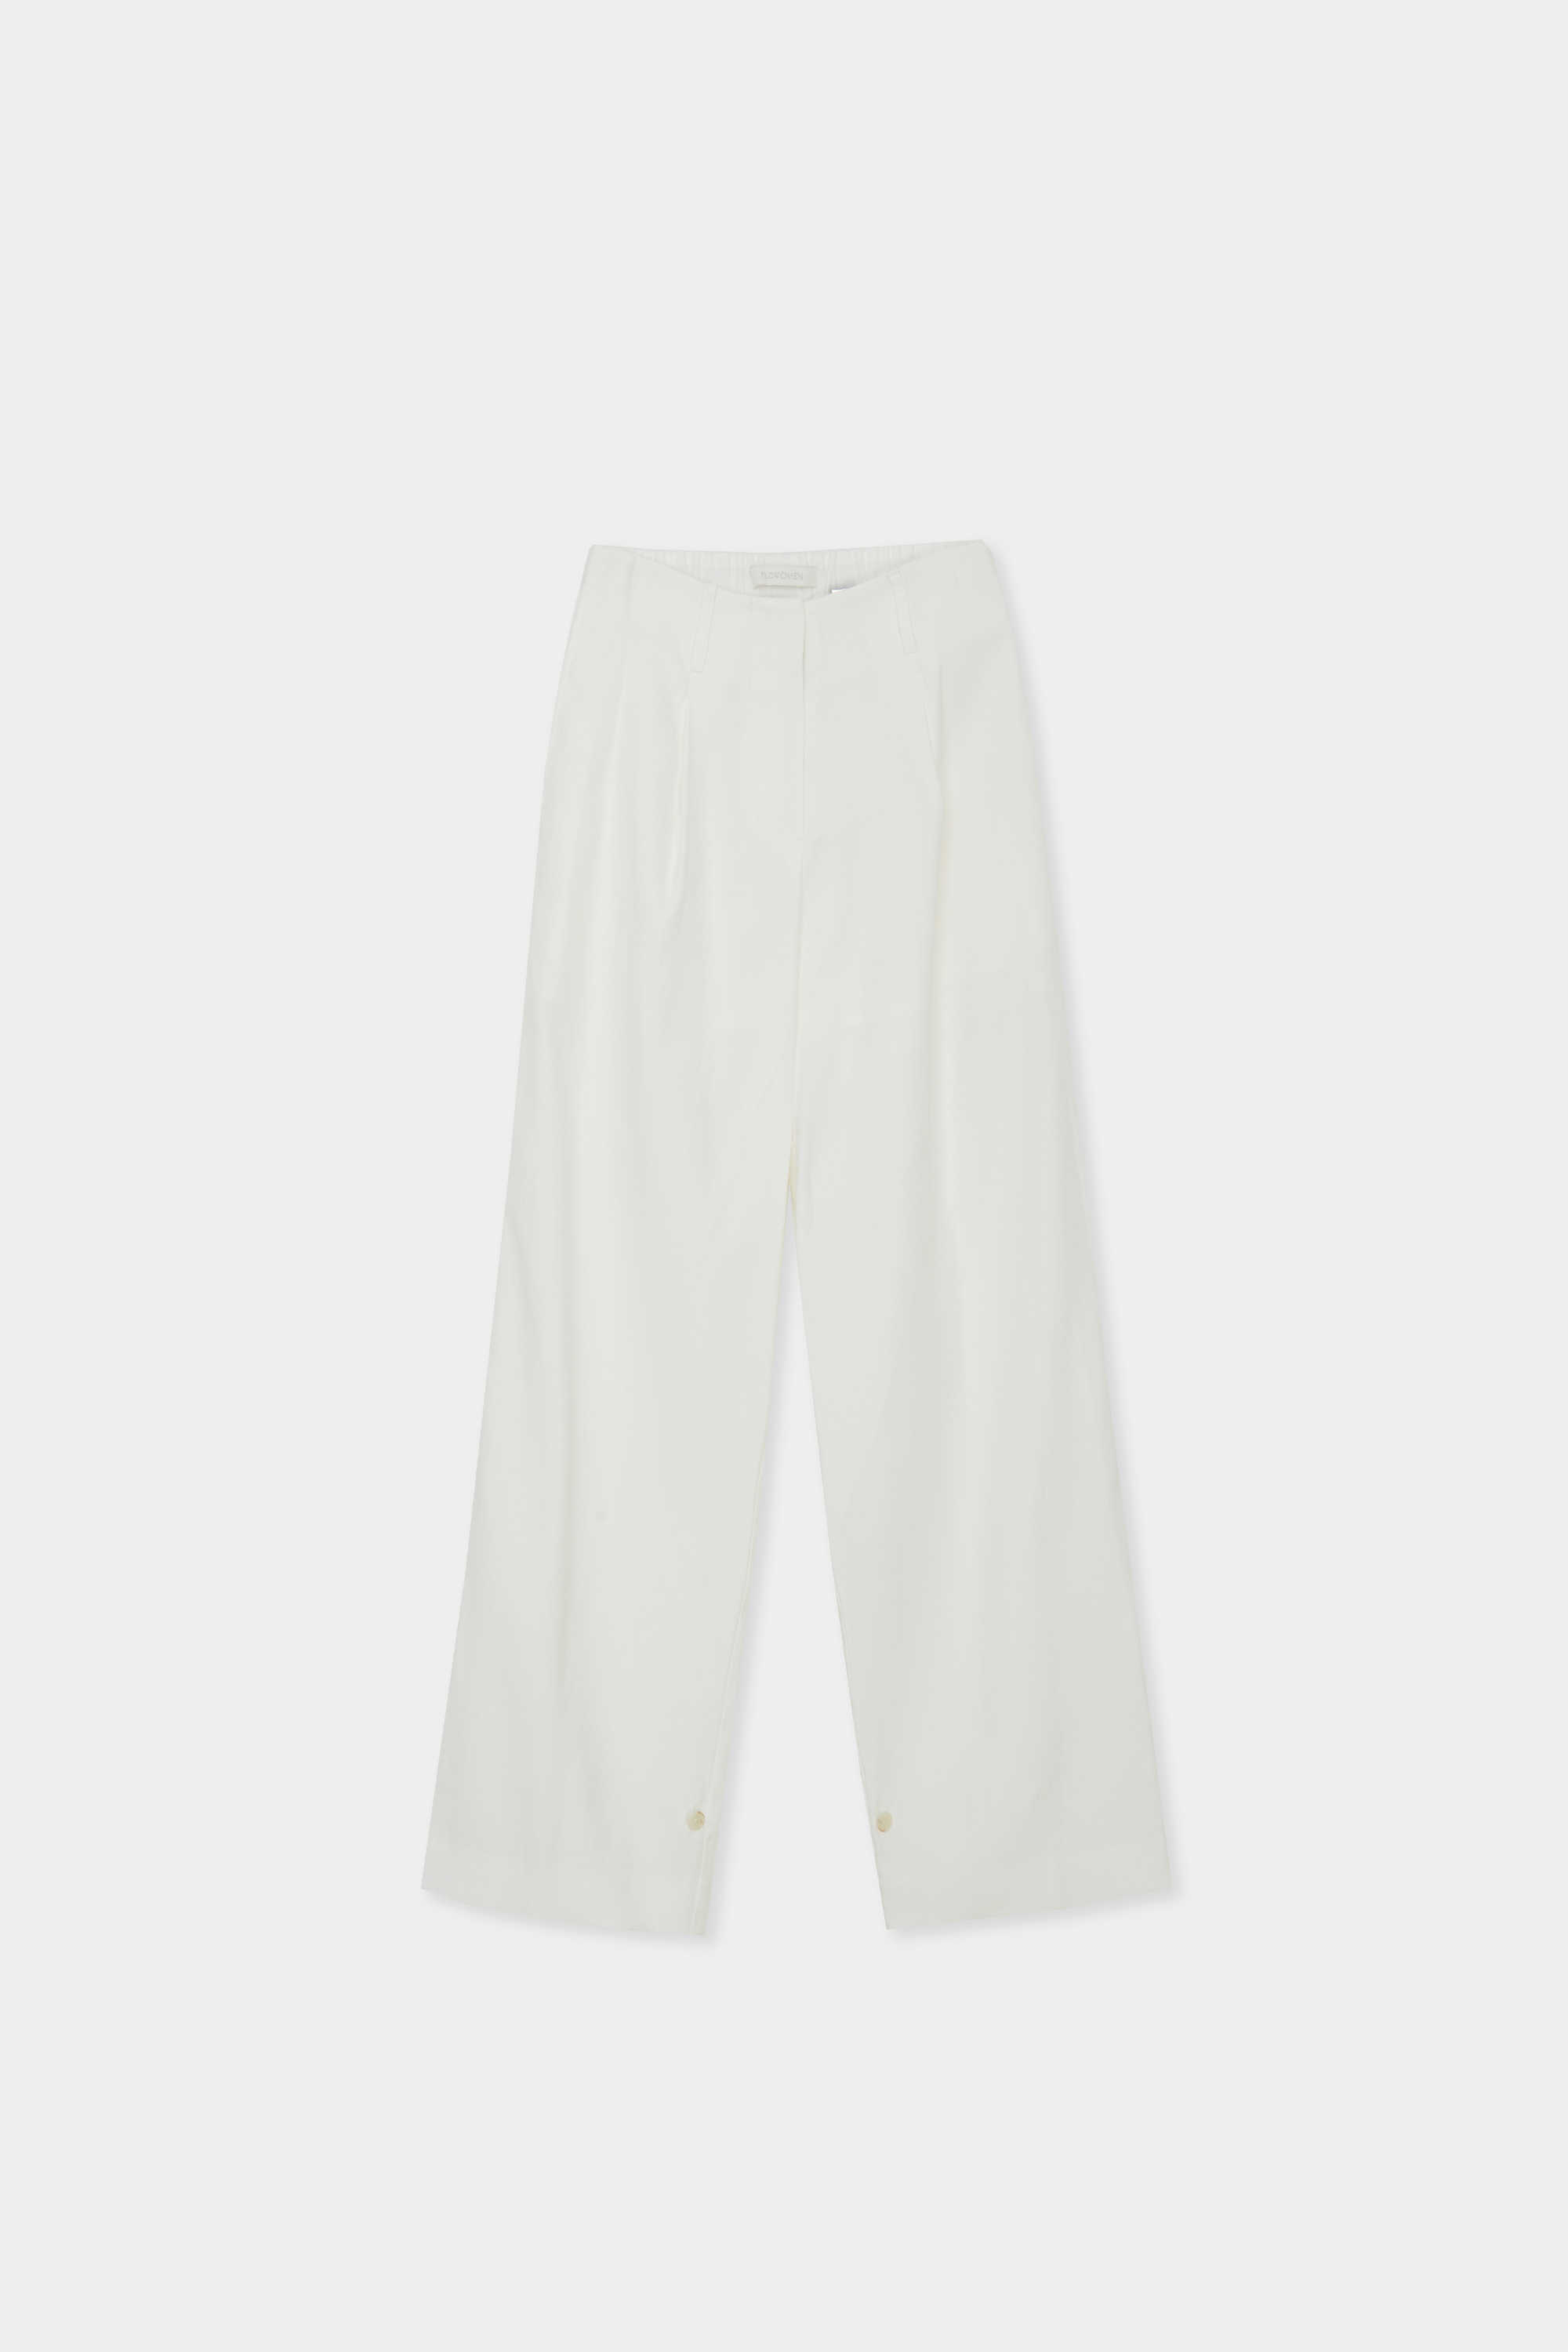 Linen Strap Pants (White)